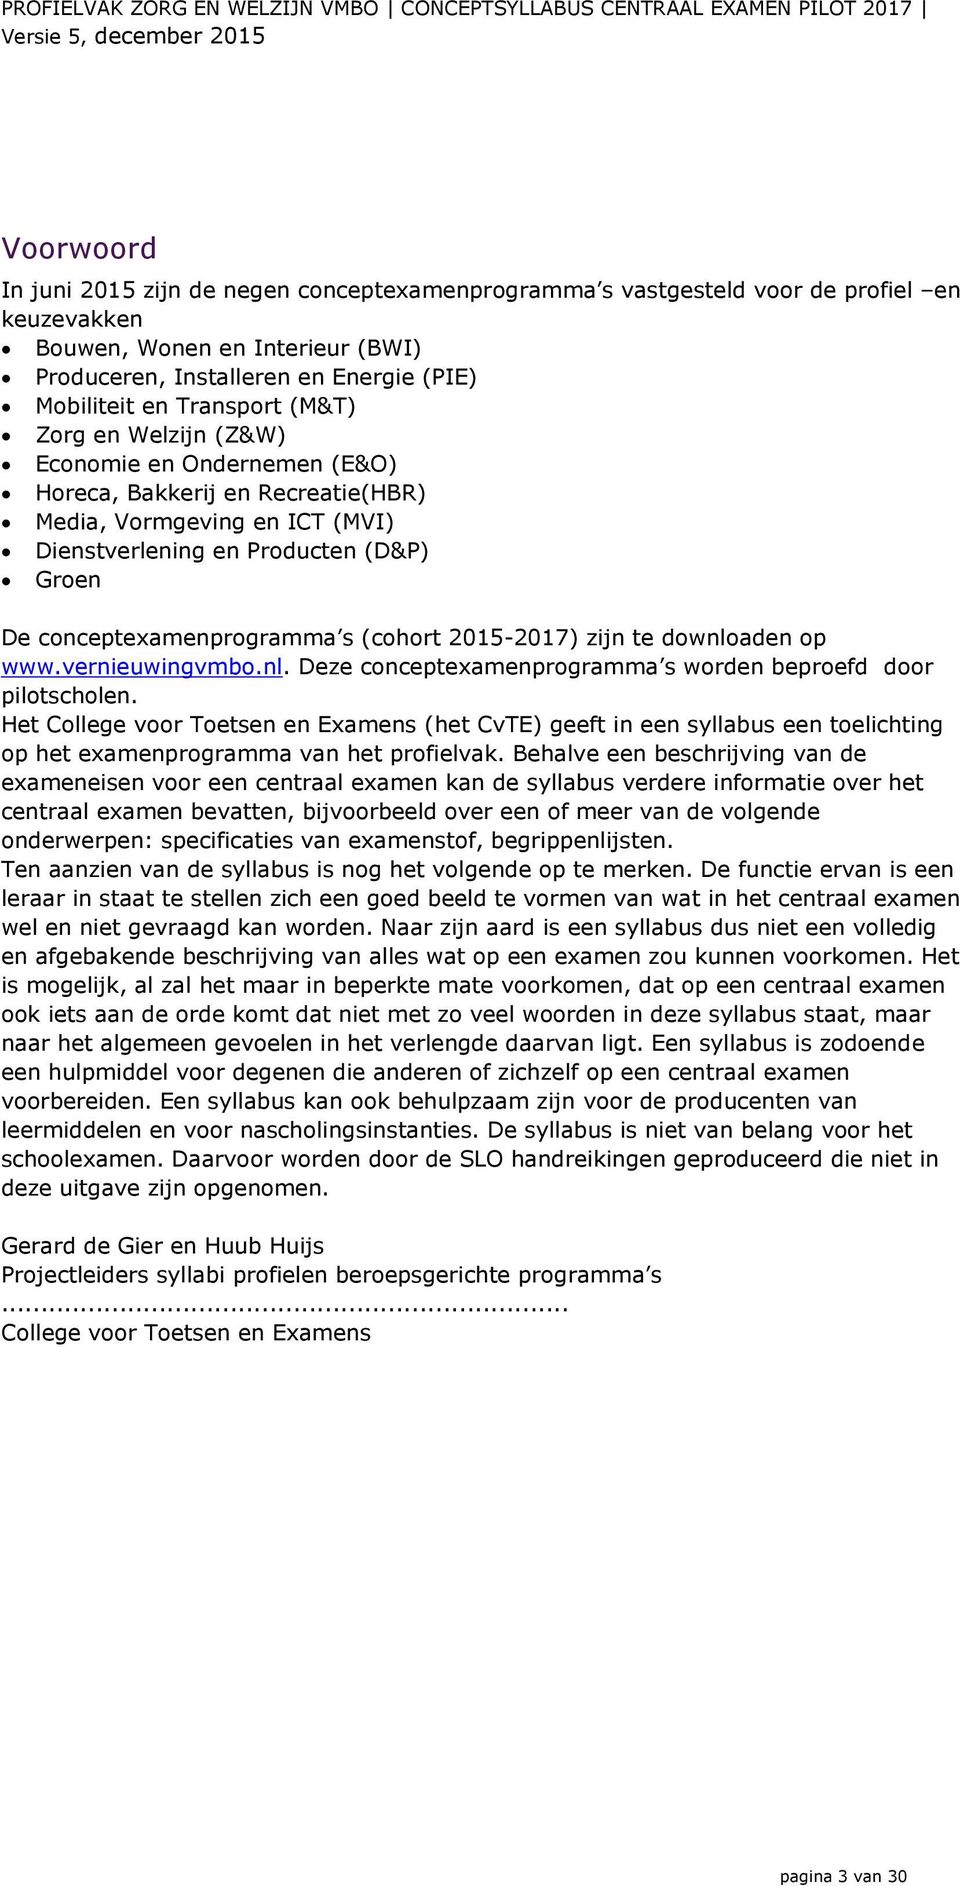 s (cohort 2015-2017) zijn te downloaden op www.vernieuwingvmbo.nl. Deze concepteamenprogramma s worden beproefd door pilotscholen.